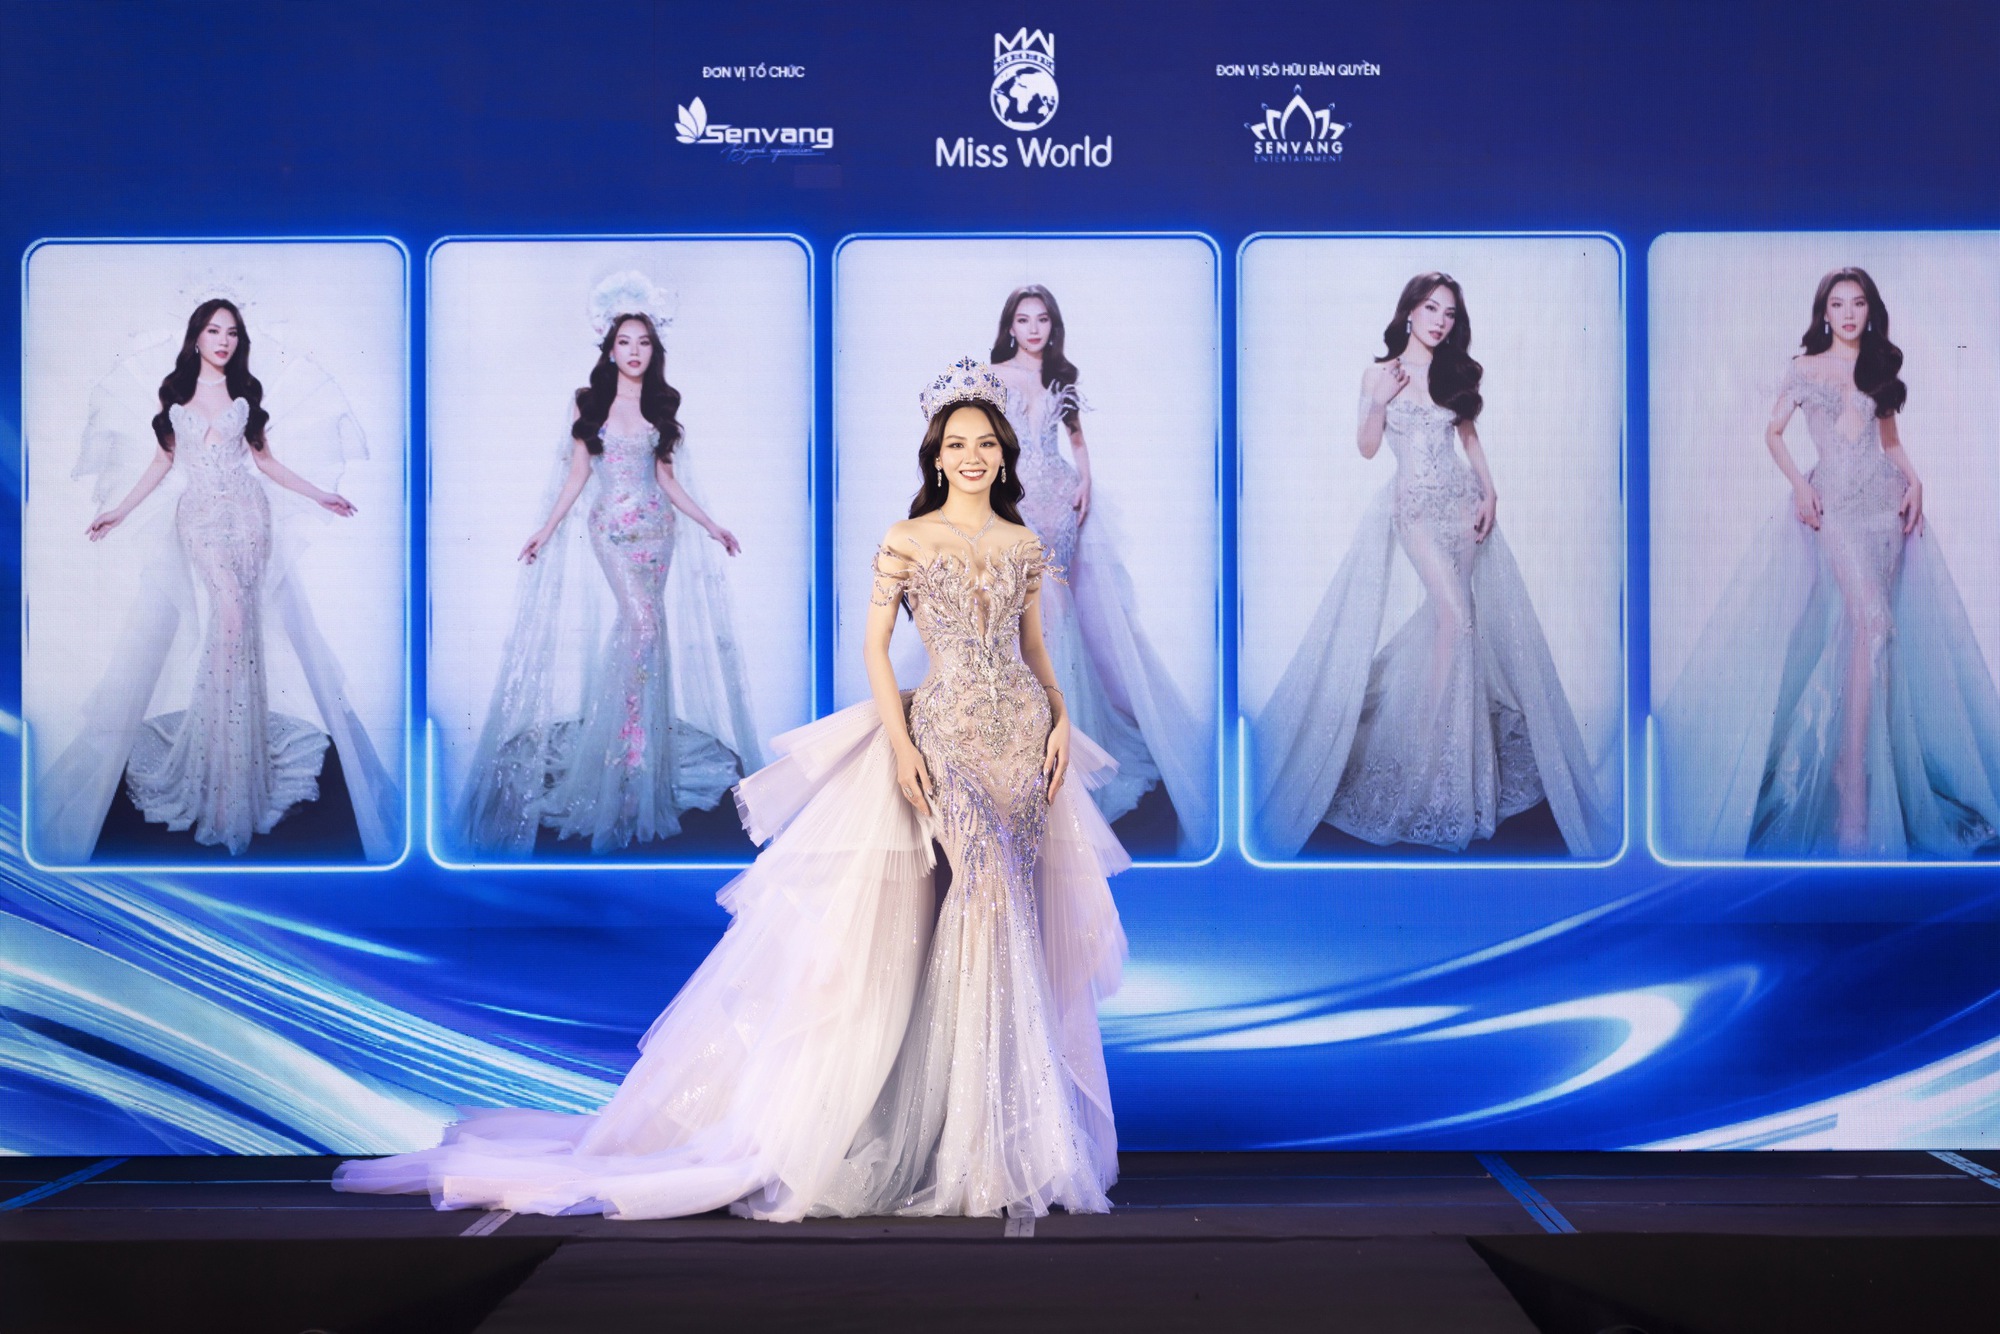 Hoa hậu Mai Phương công bố loạt váy áo tại Miss World, 1 nhân vật đặc biệt và dàn Hậu đình đám góp mặt- Ảnh 10.